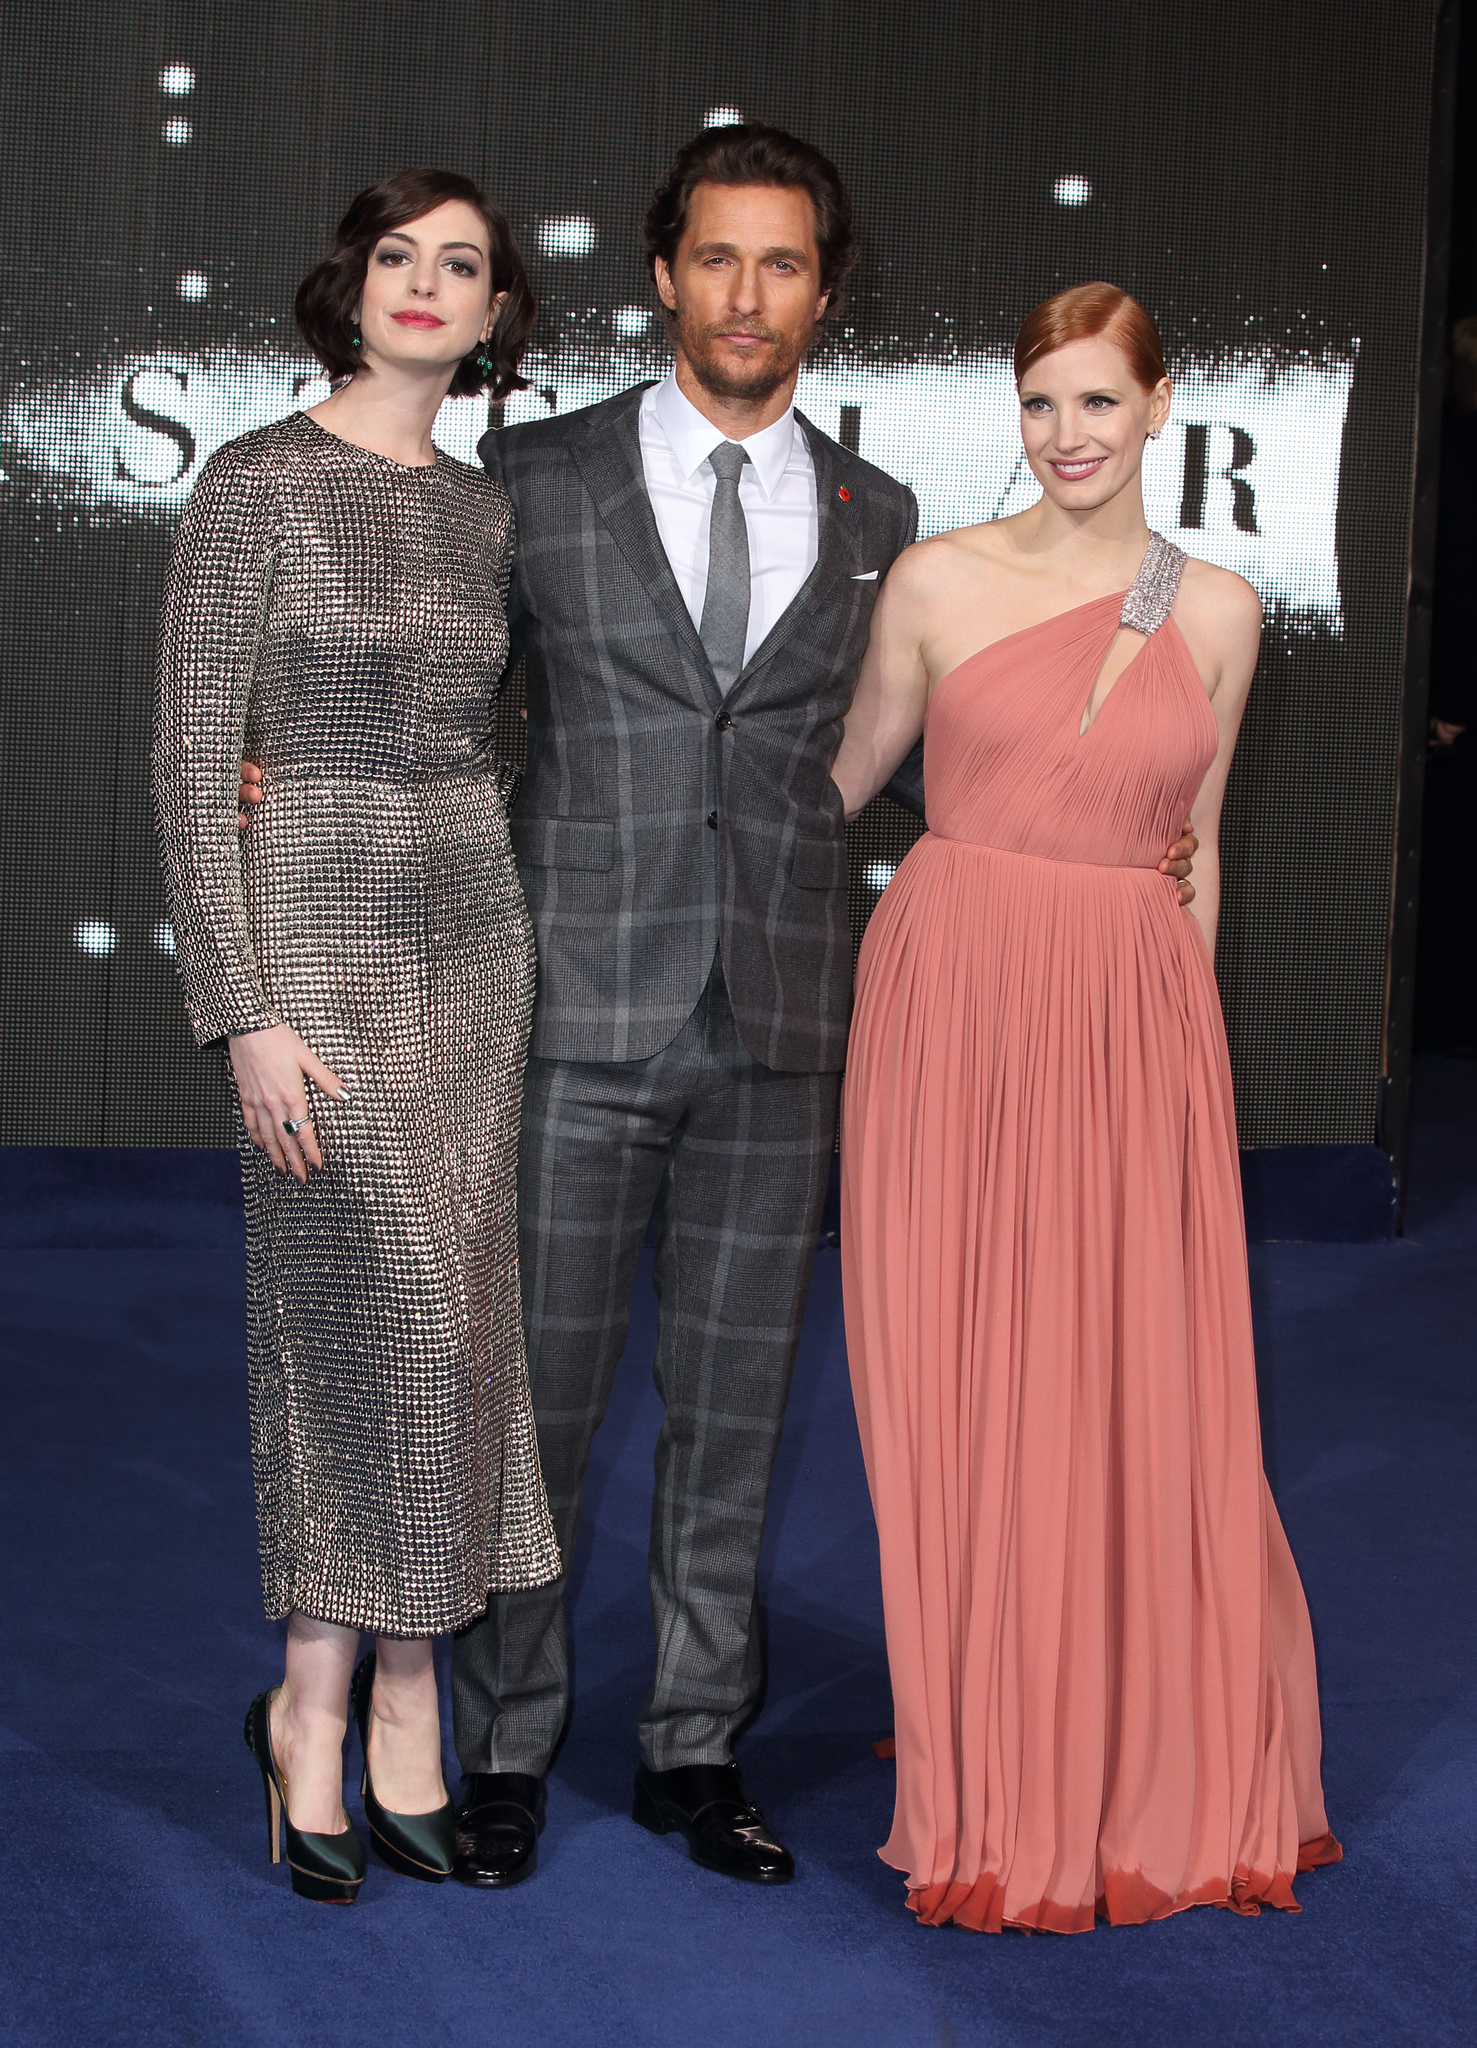 Matthew McConaughey, Anne Hathaway and Jessica Chastain at event of Tarp zvaigzdziu (2014)